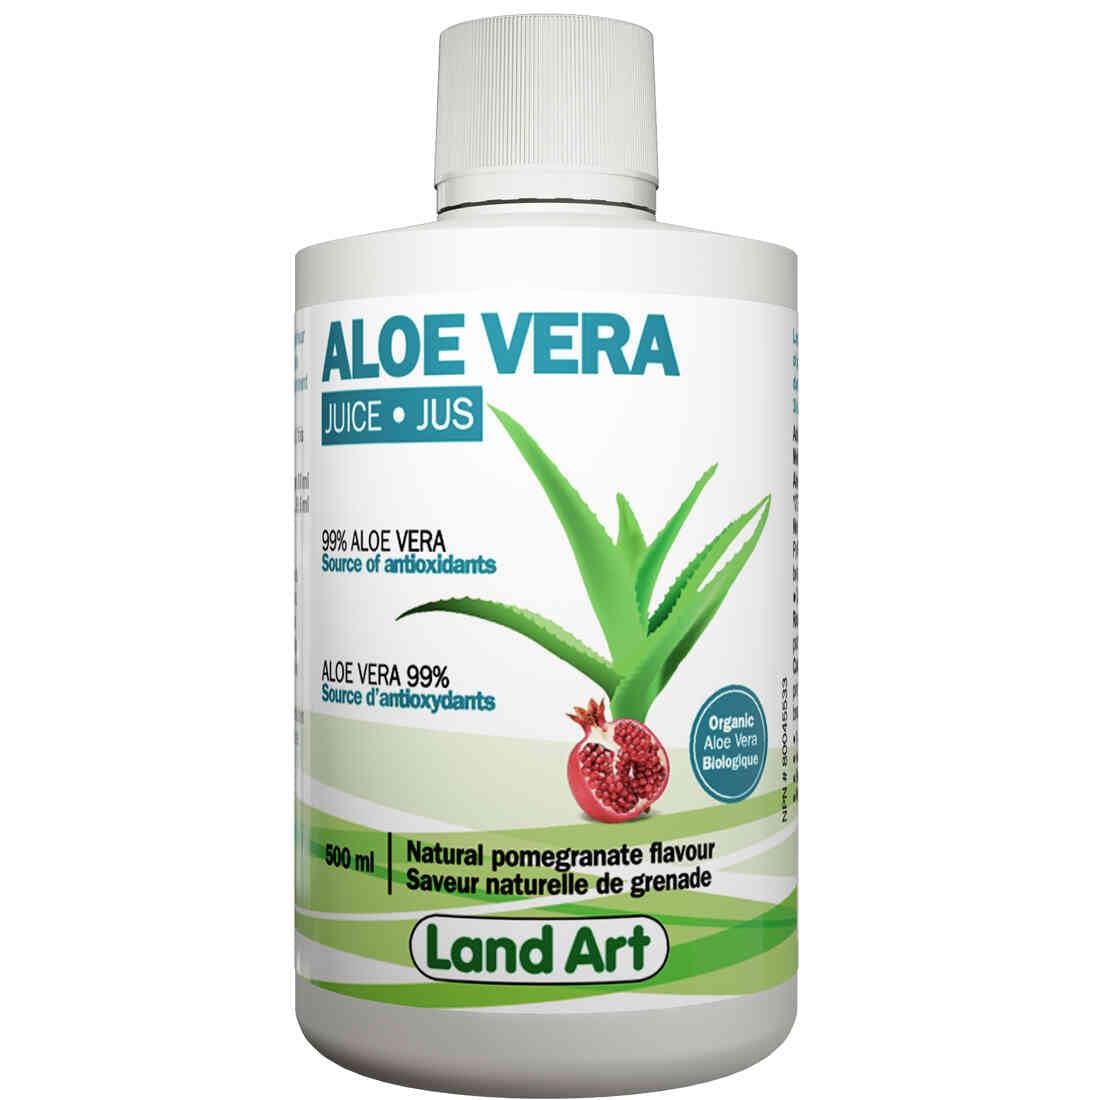 Land Art Aloe Vera Juice